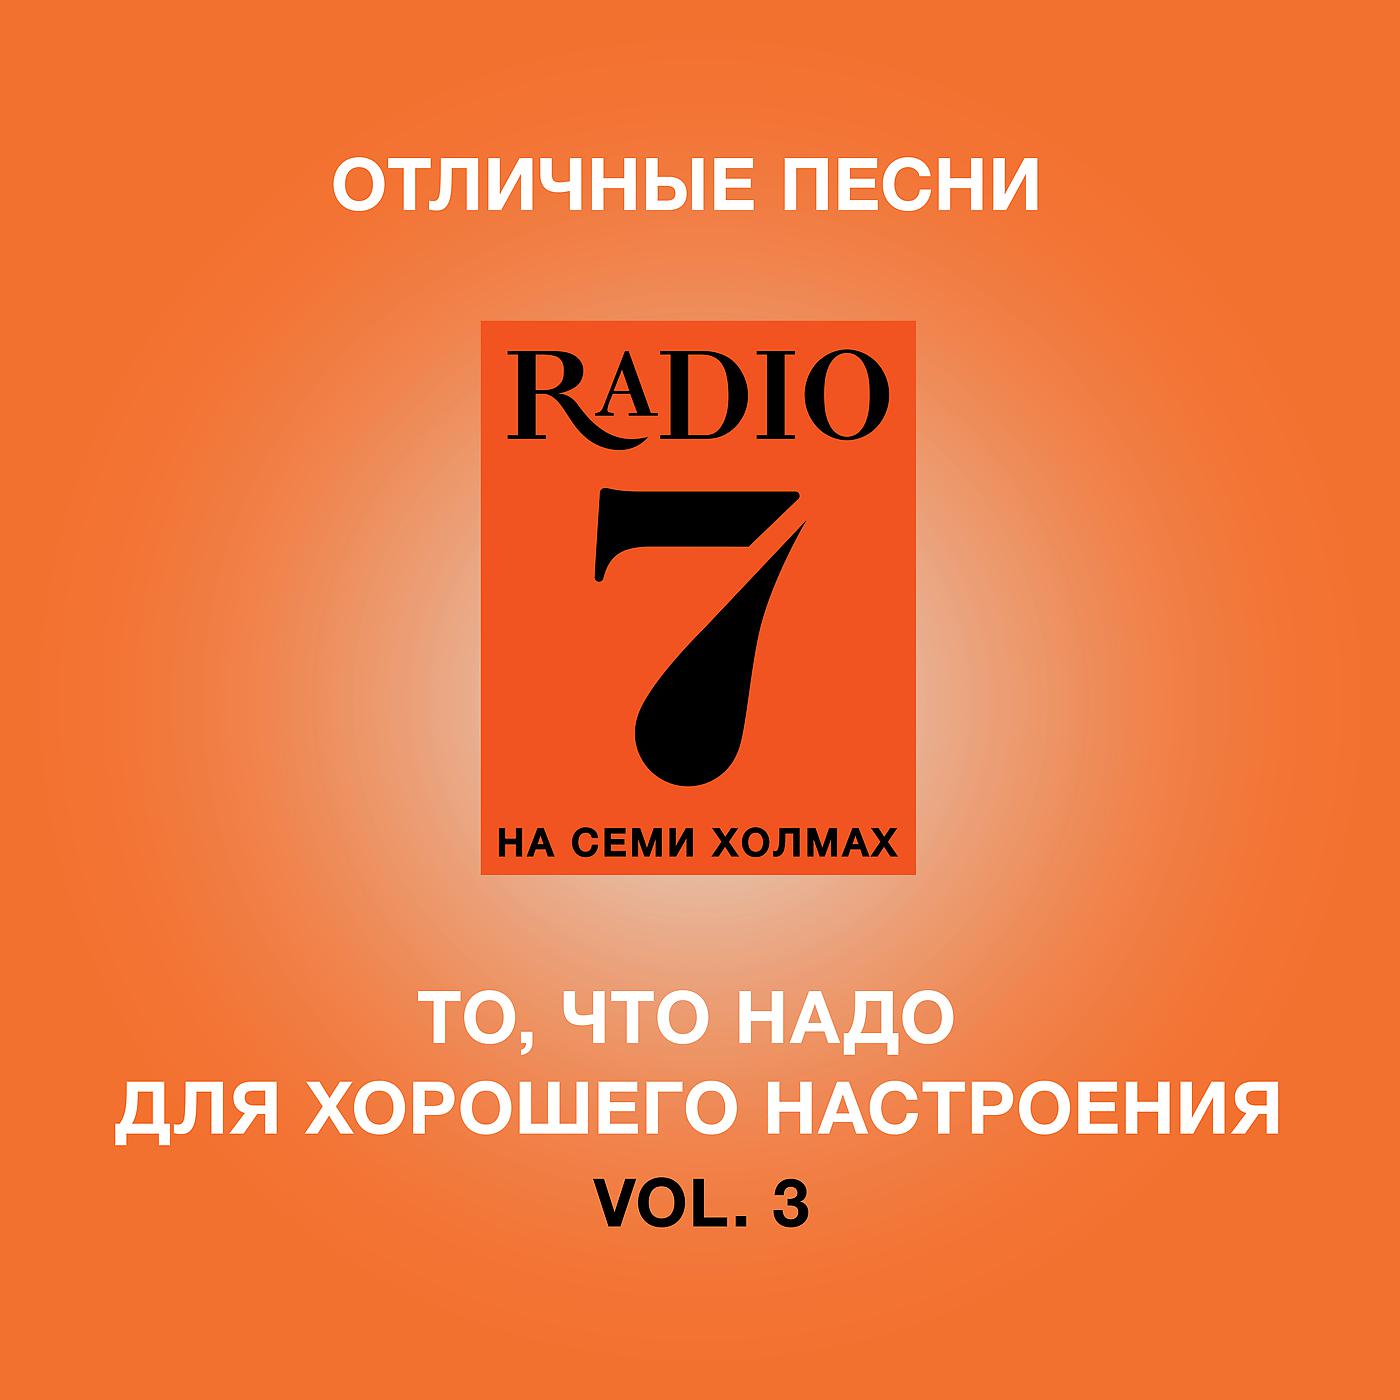 Радио семь что играло. Радио 7. Радио 7 на семи холмах. Радио 7 логотип. Радио 7 на семи холмах логотип.